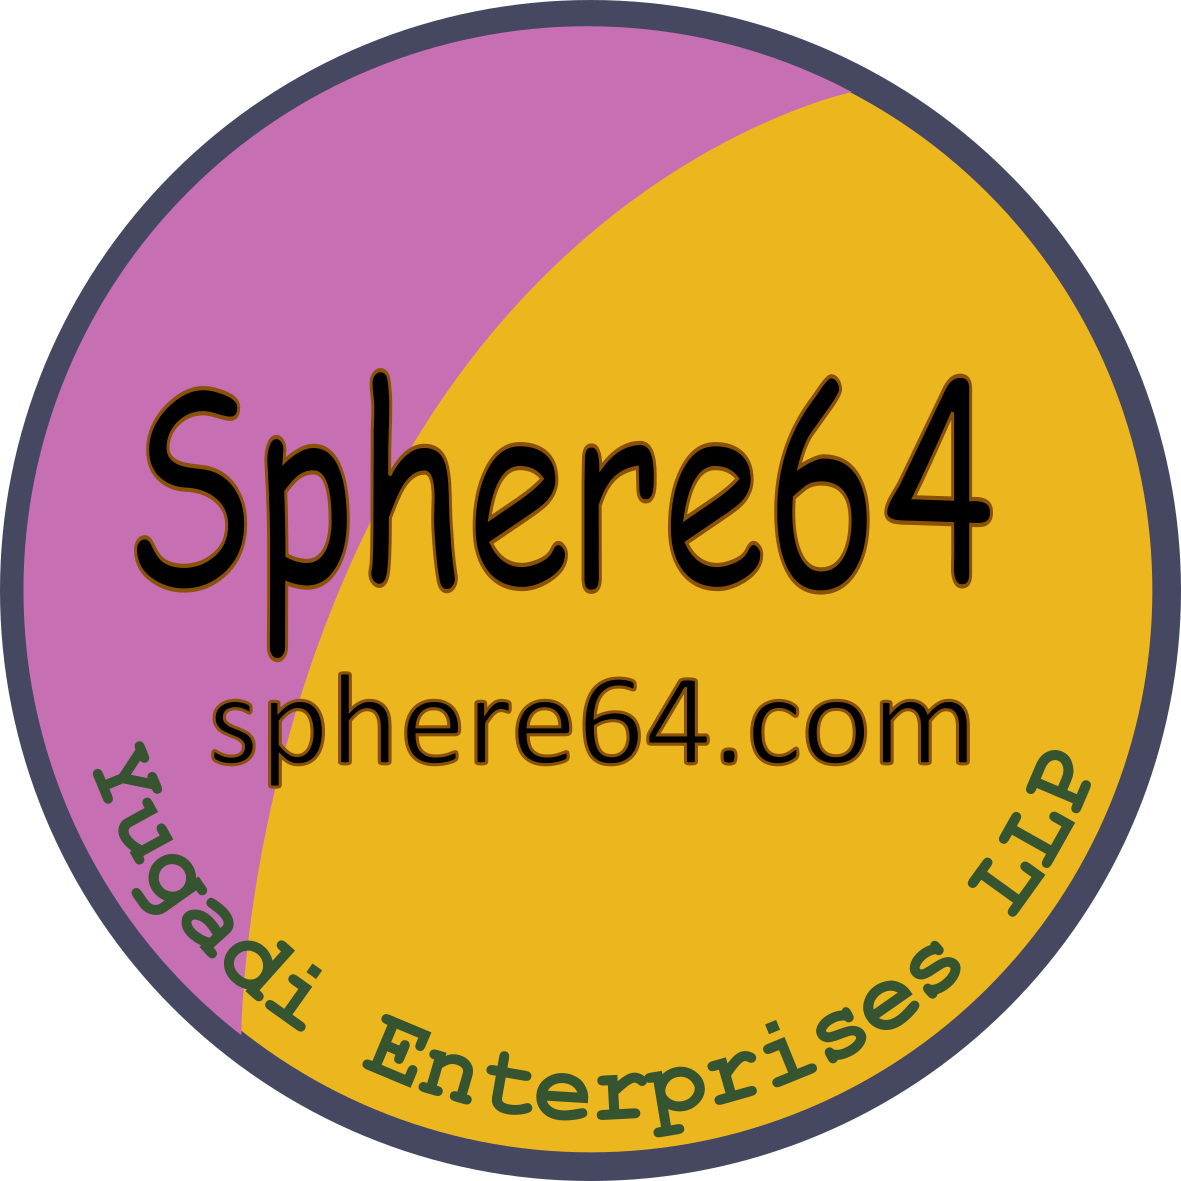 Sphere64